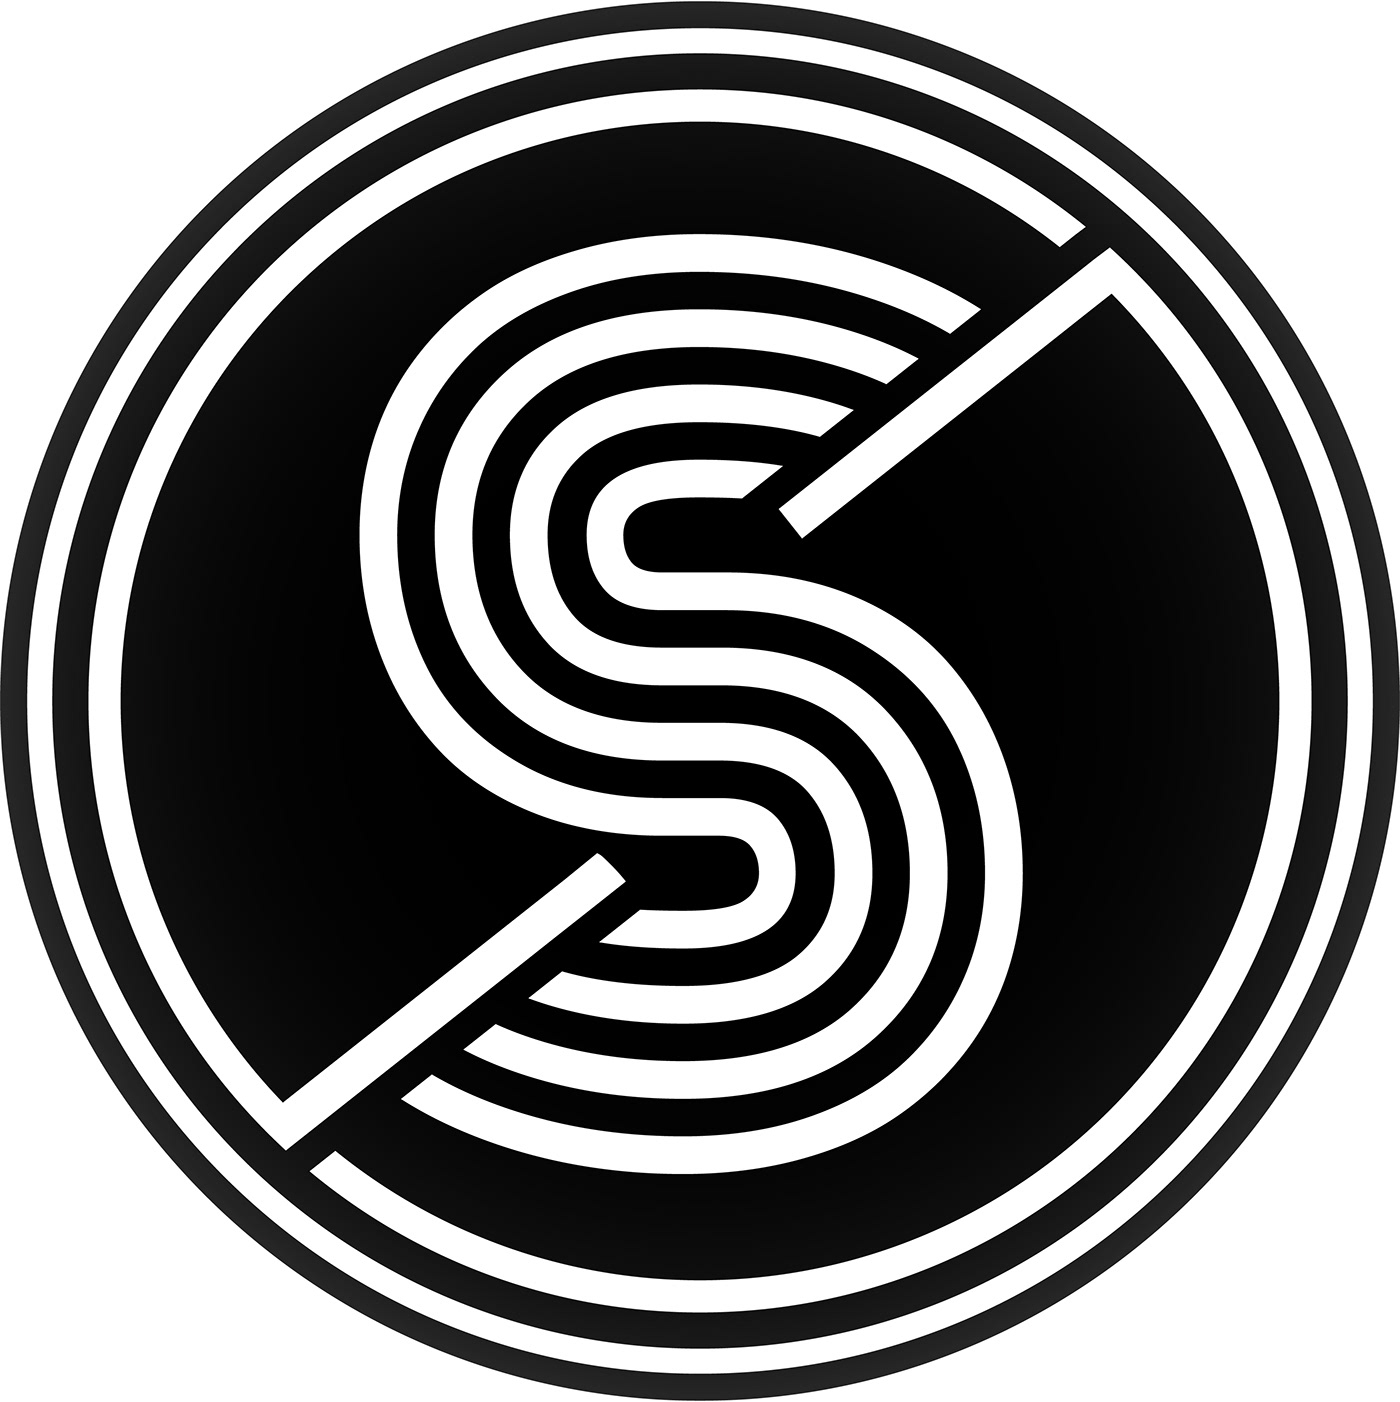 Hi'
I'm SUZON
I'll Design a Professional Team and Business Letter Logo!